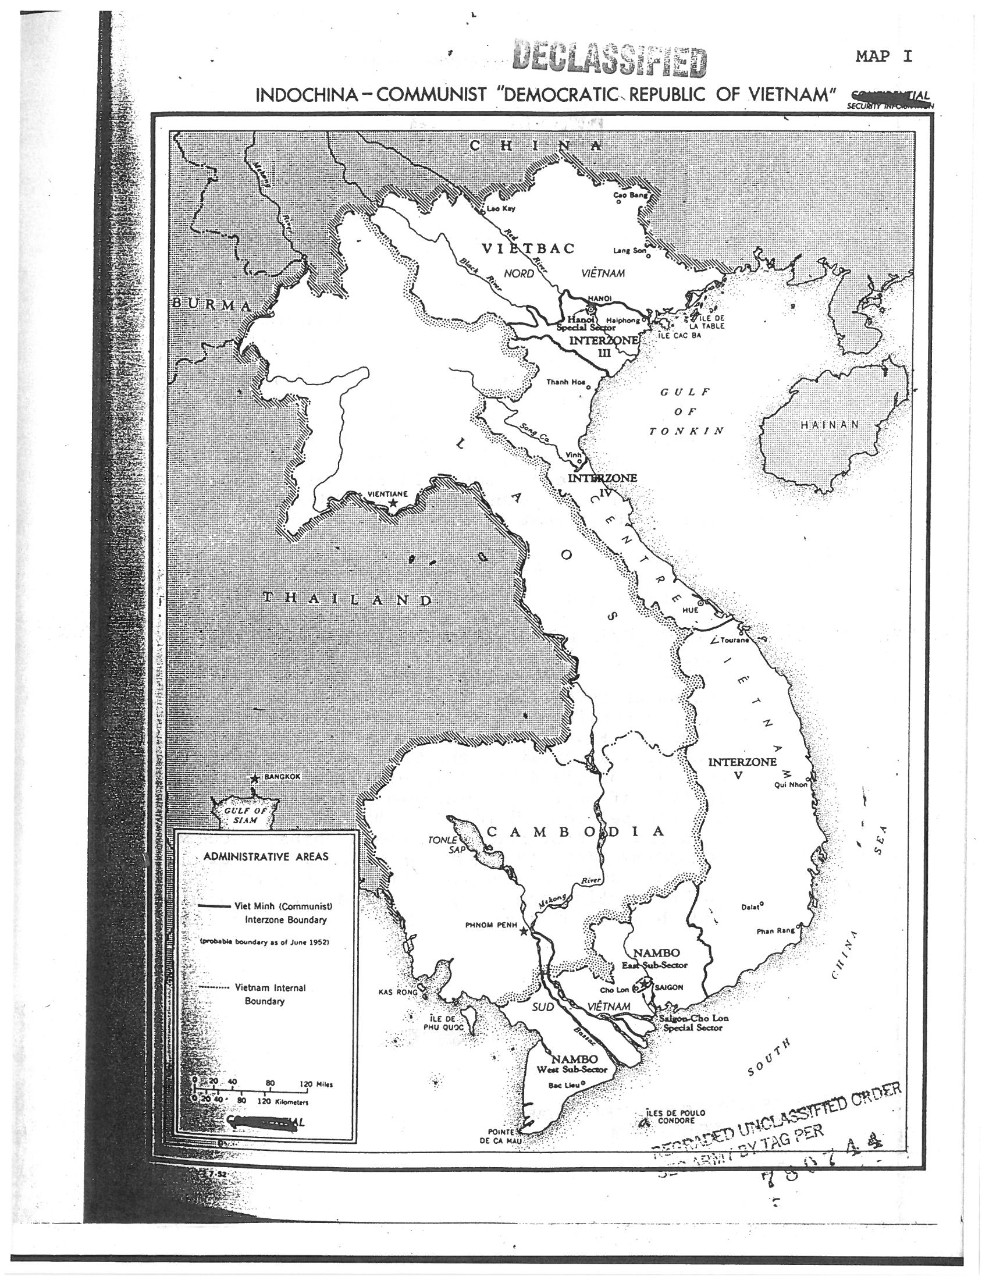 Indochina-Communist "Democratic Republic Of Vietnam"